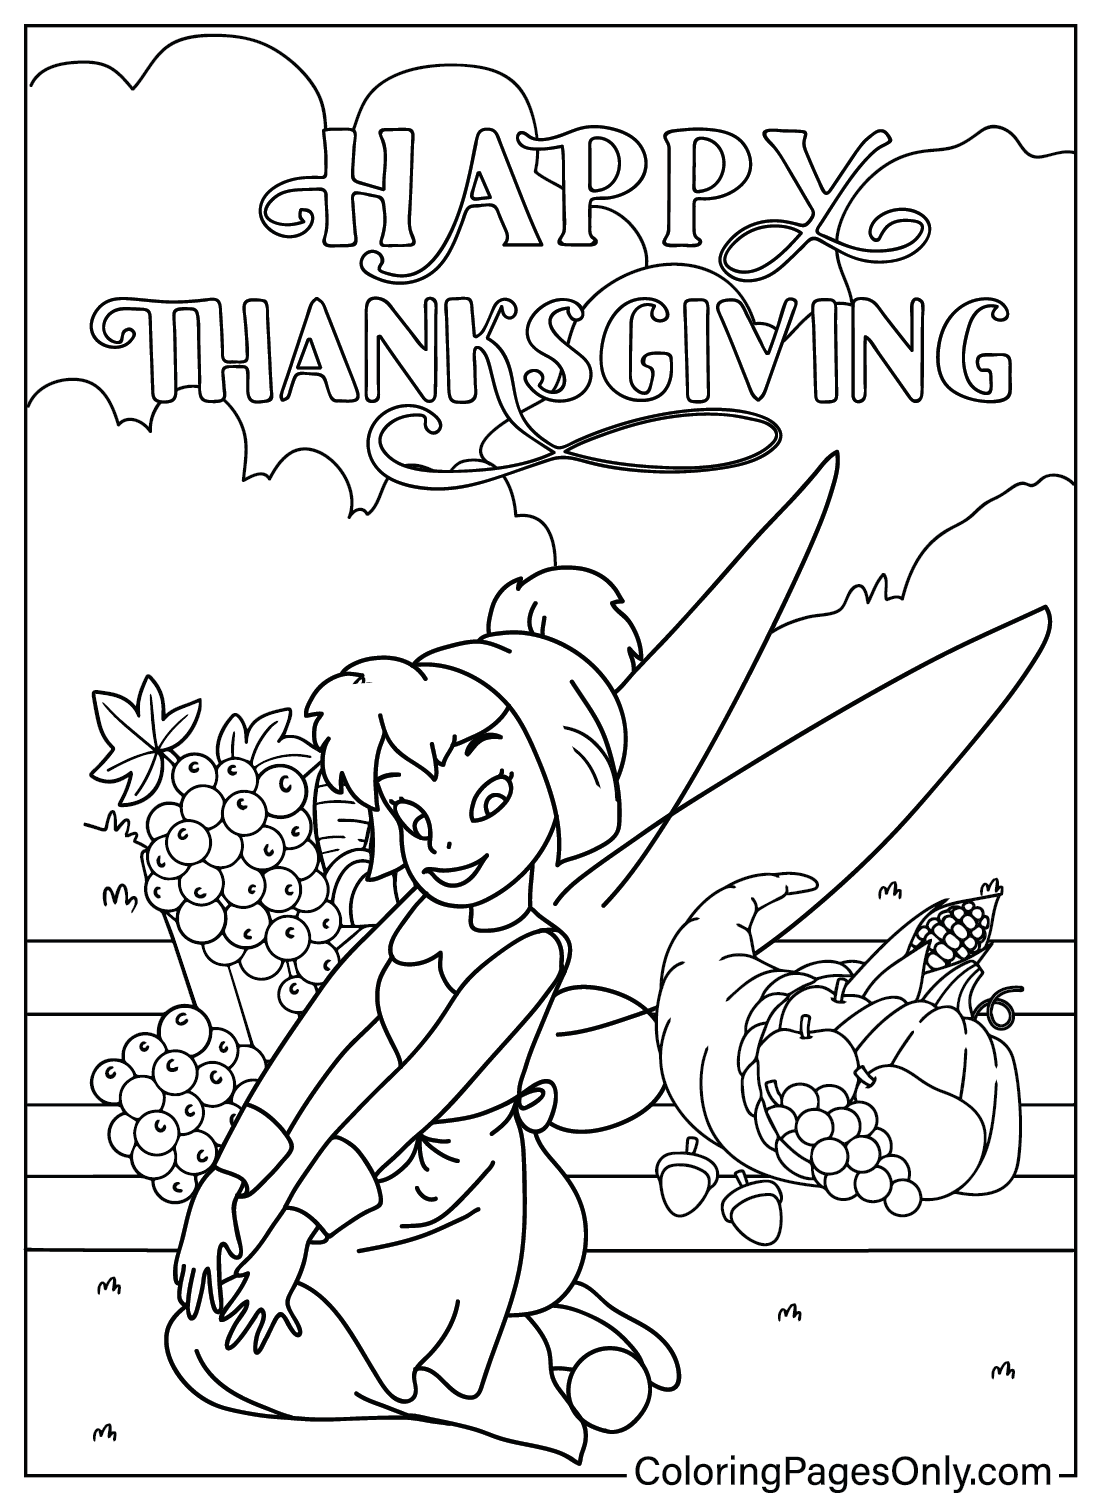 Página para colorir do Dia de Ação de Graças da Disney Tinker Bell, de I Am Thankful For